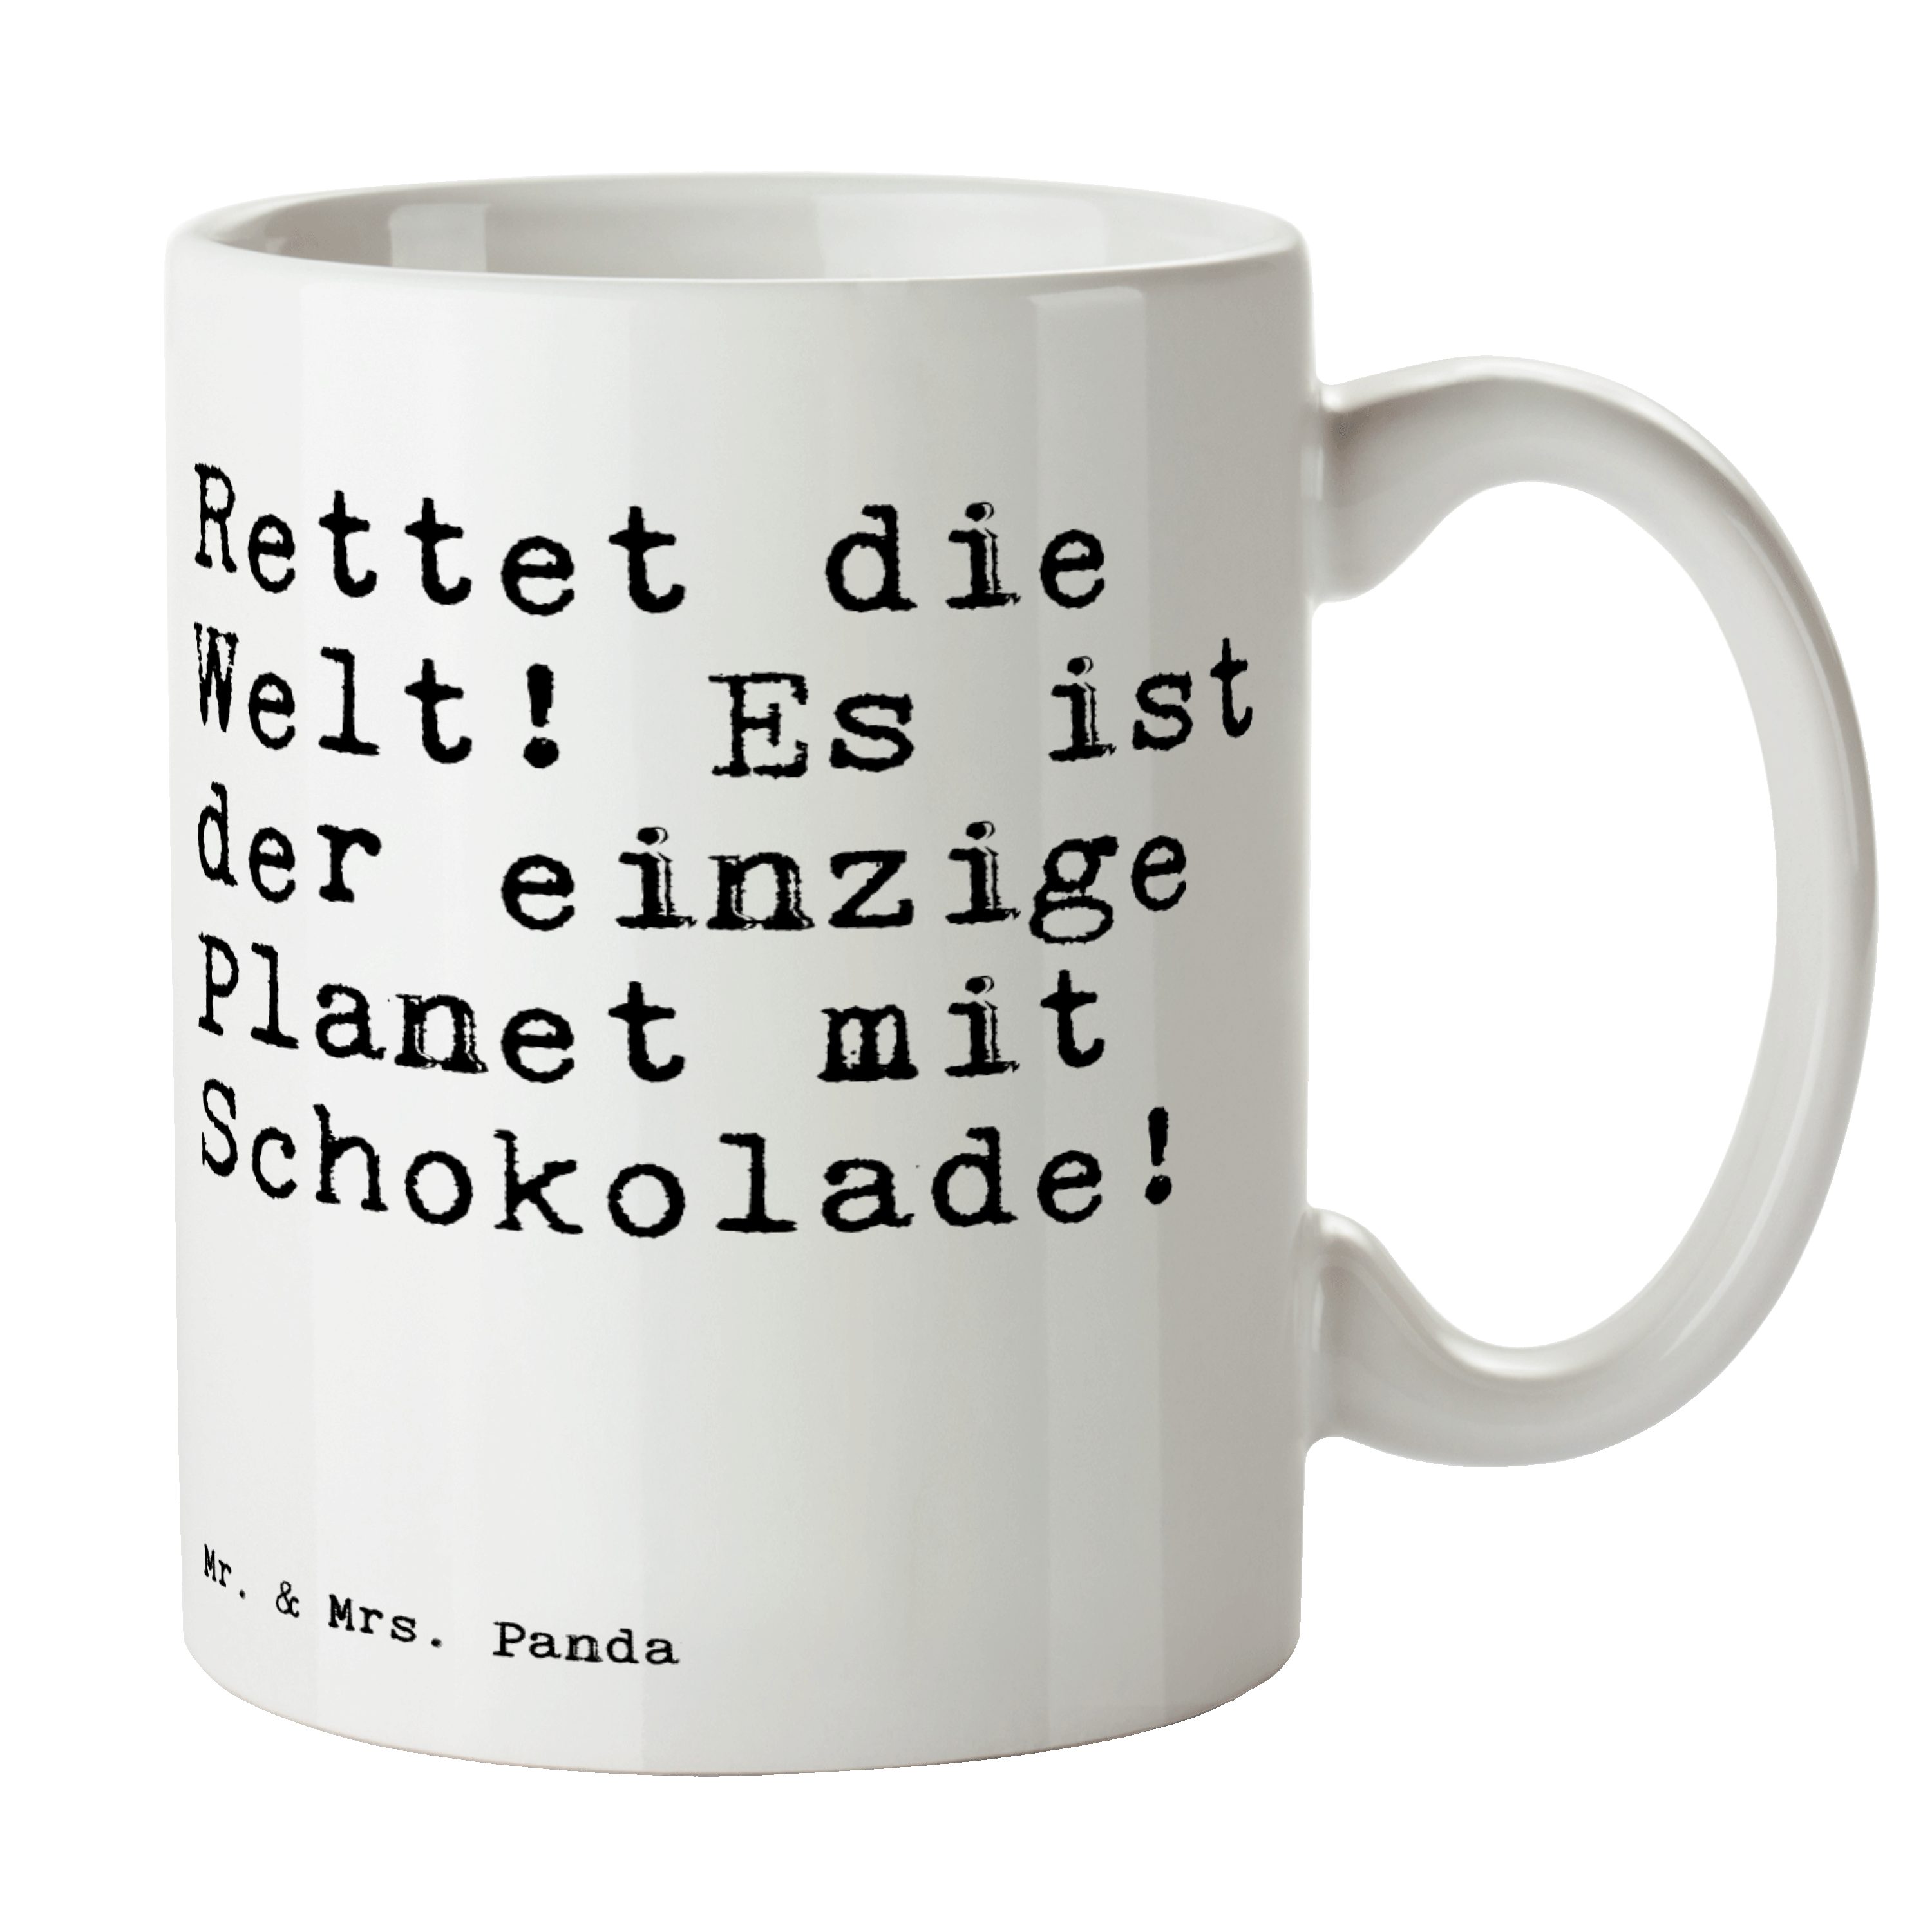 Mr. & Mrs. Spruch, die Schokolade, Rettet Keramik Tasse Panda Welt! - Geschenk, - Es... Zitate, Weiß